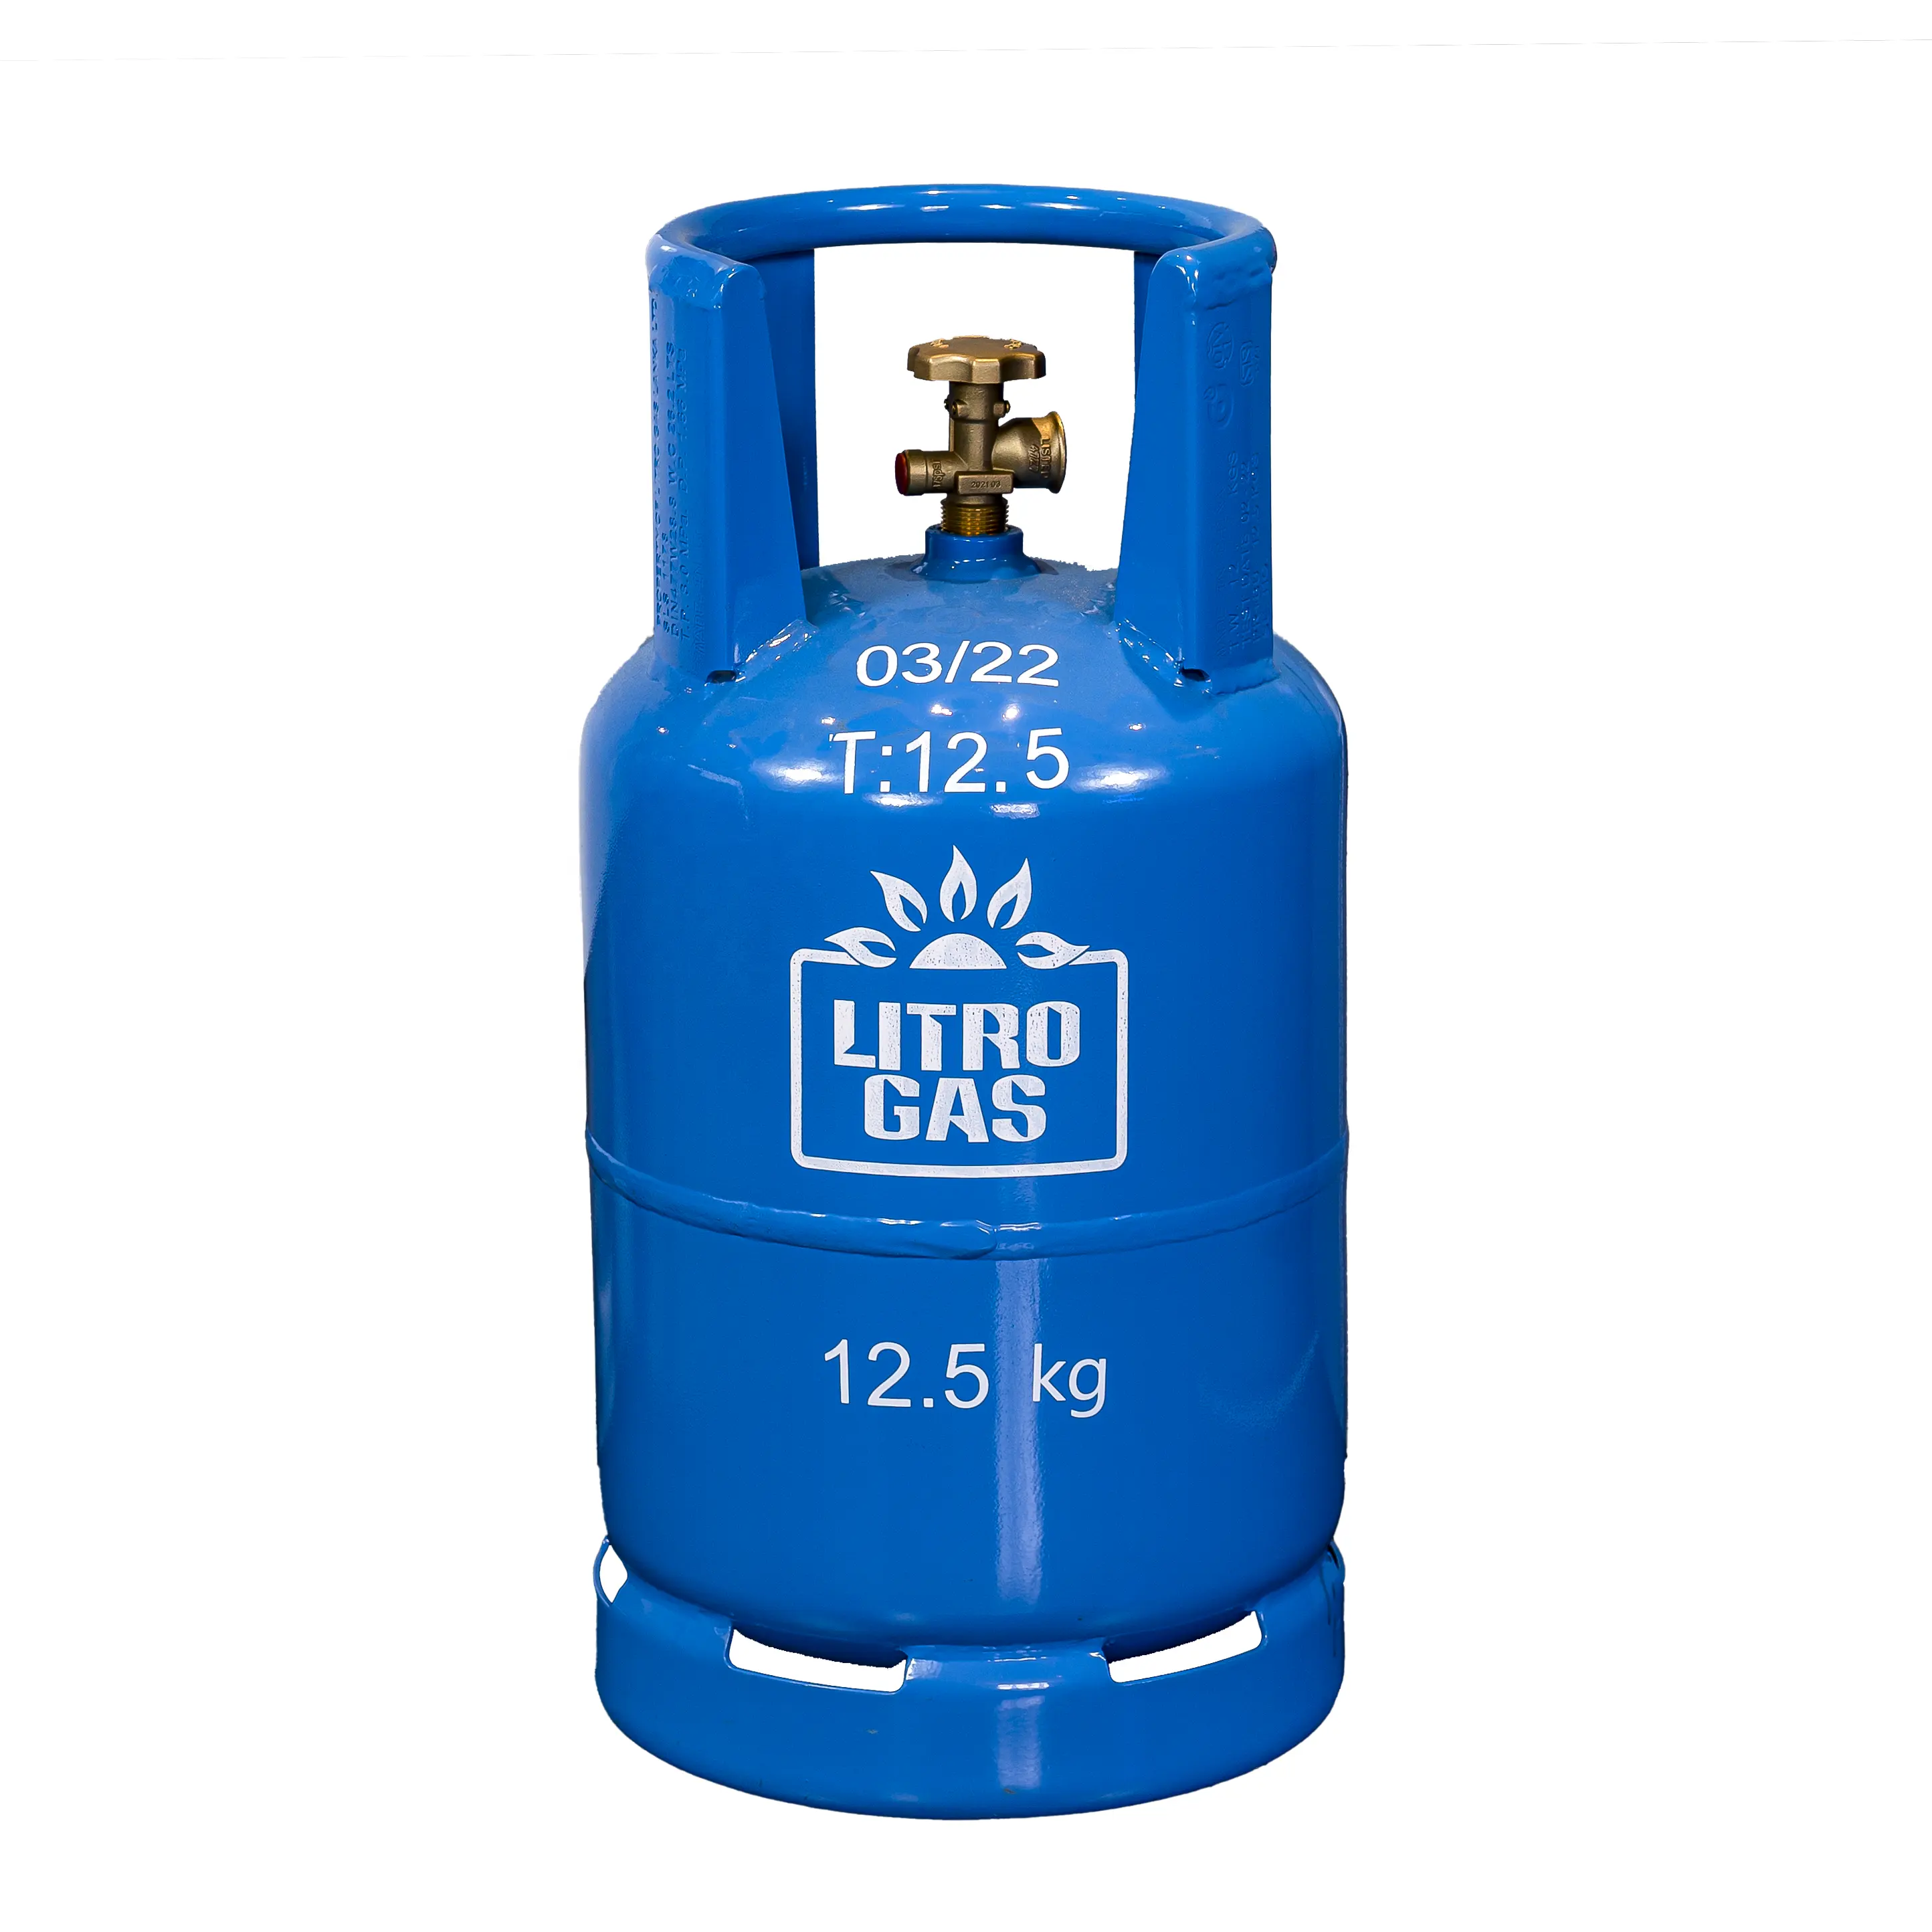 hochwertiger lpg-tank mini-kochen camping gas stahlflasche lpg-zylinder